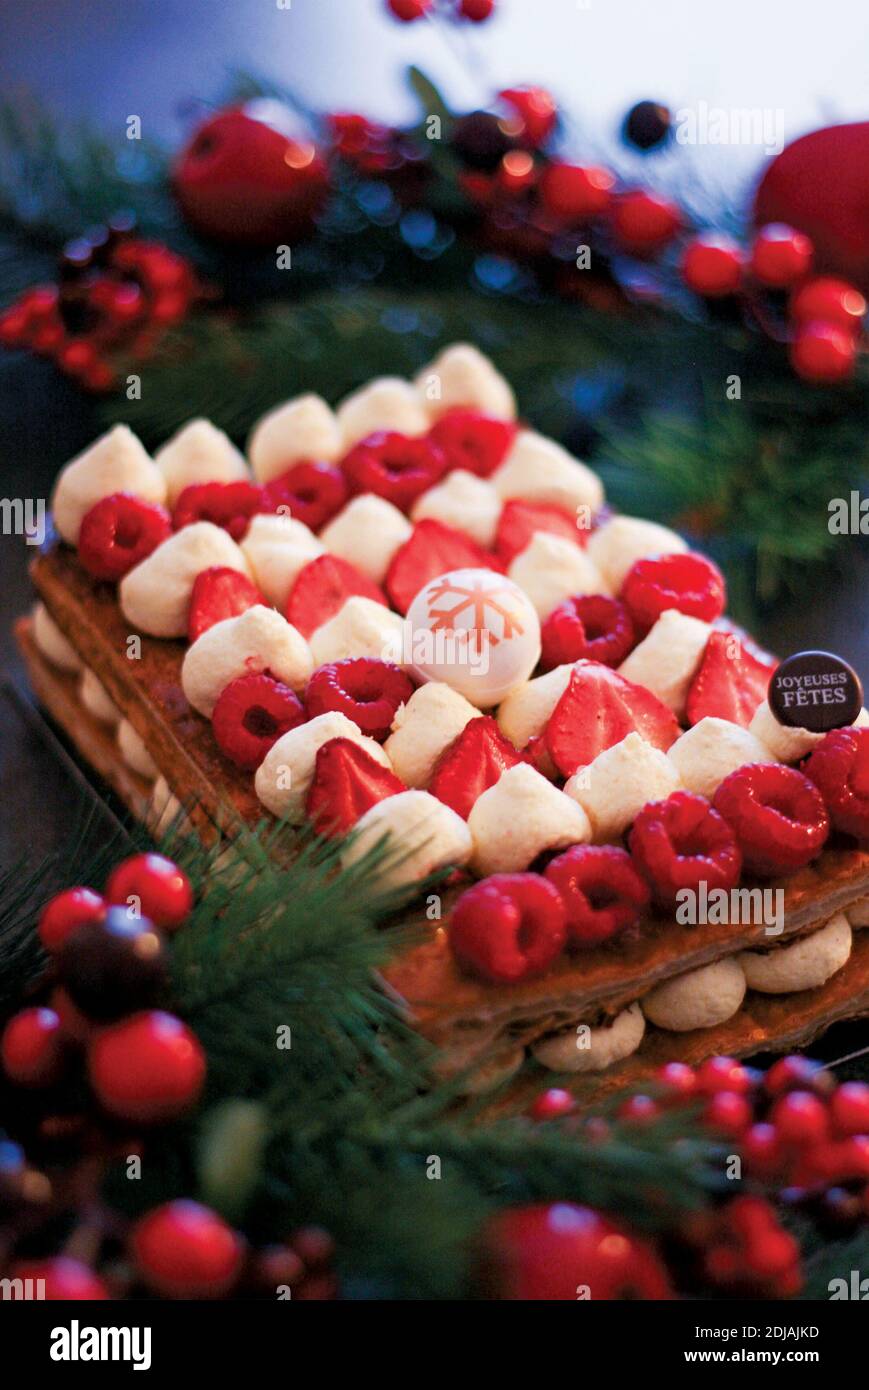 belle photographie d'un millefeuille aux frailes et framboises, dessert traditionnel français, pour illustrer une recette ou un article de magazine Foto Stock